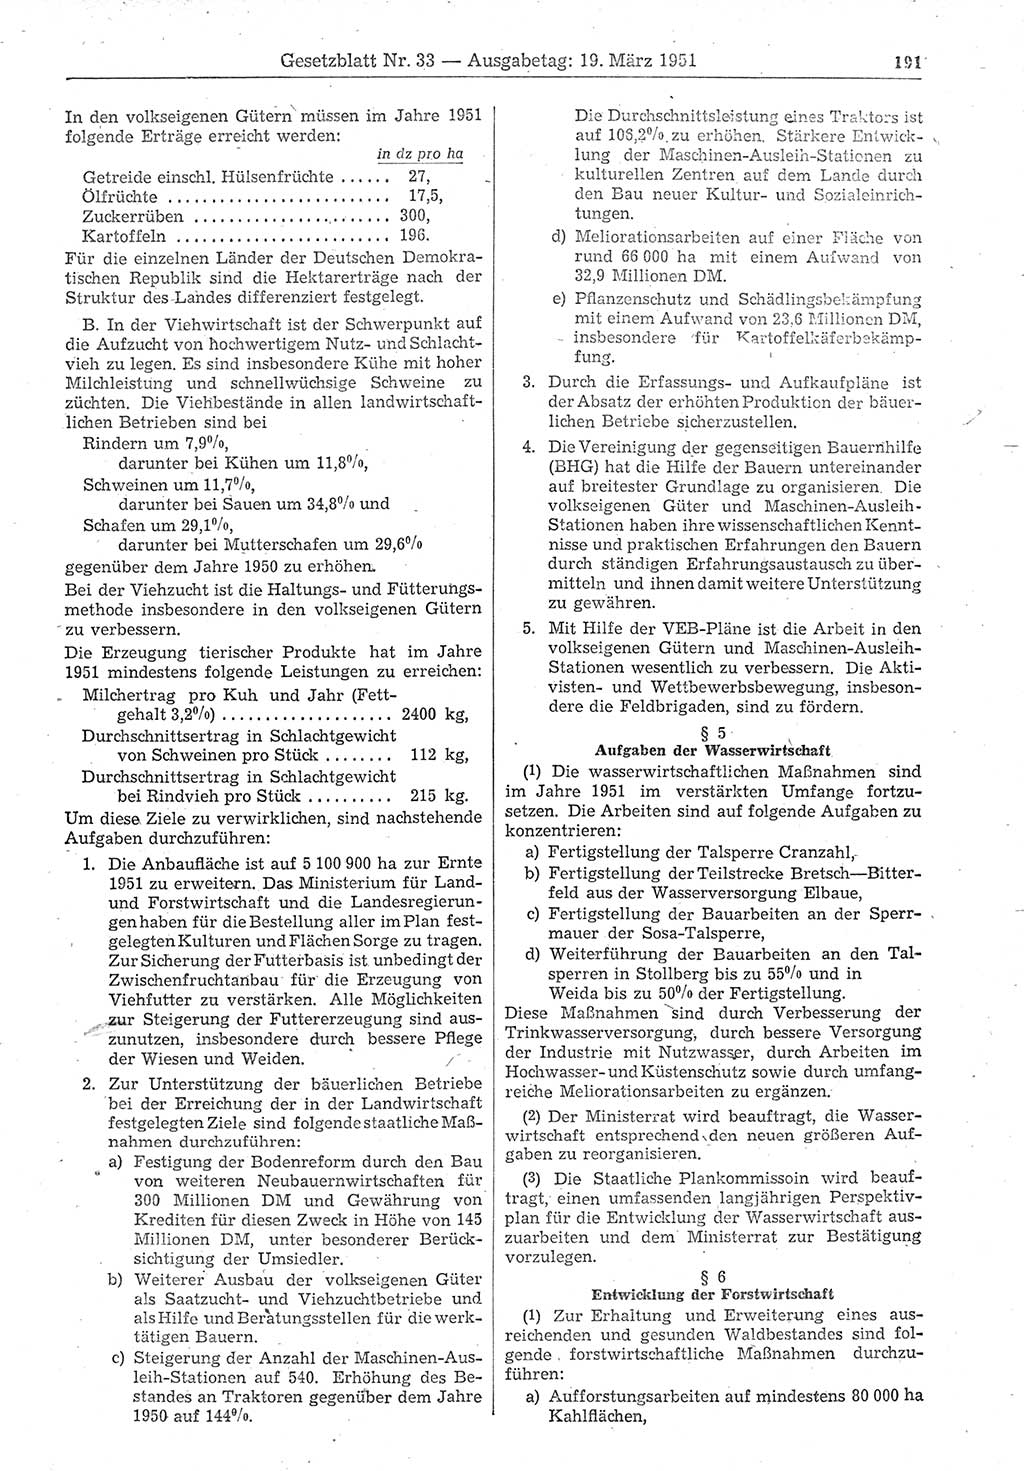 Gesetzblatt (GBl.) der Deutschen Demokratischen Republik (DDR) 1951, Seite 191 (GBl. DDR 1951, S. 191)